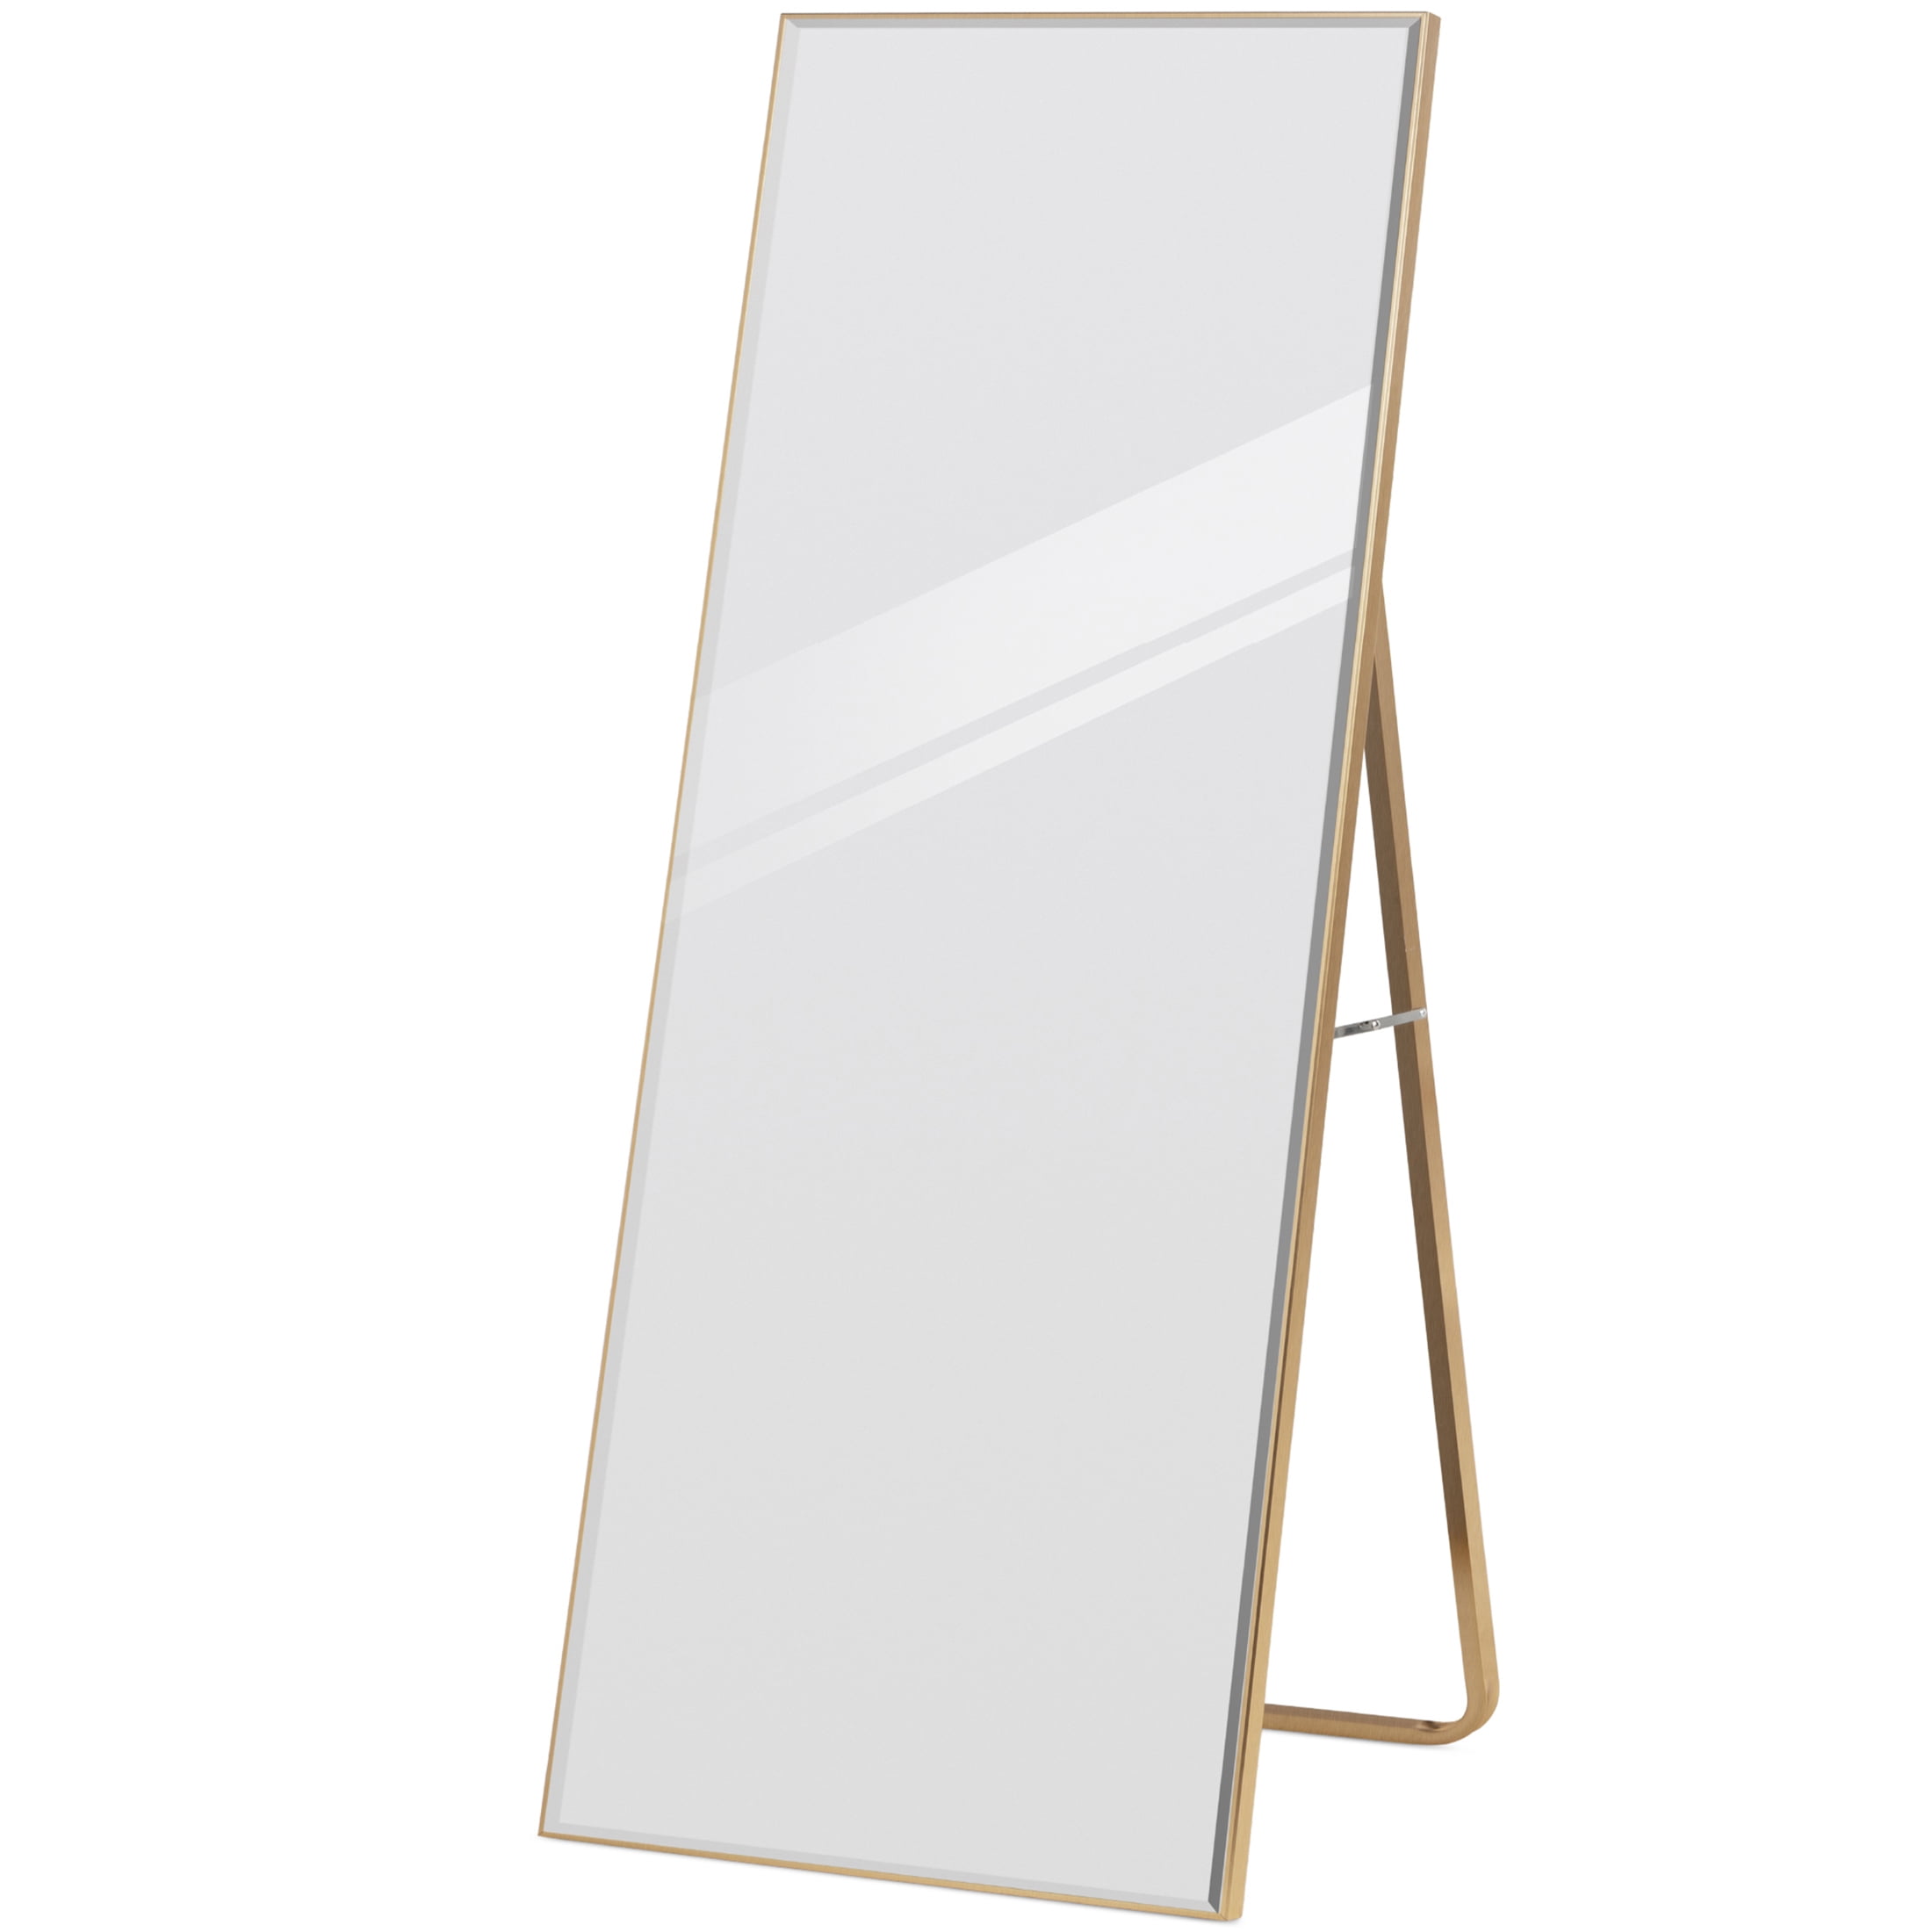 The 5 Best Full-Length Mirror